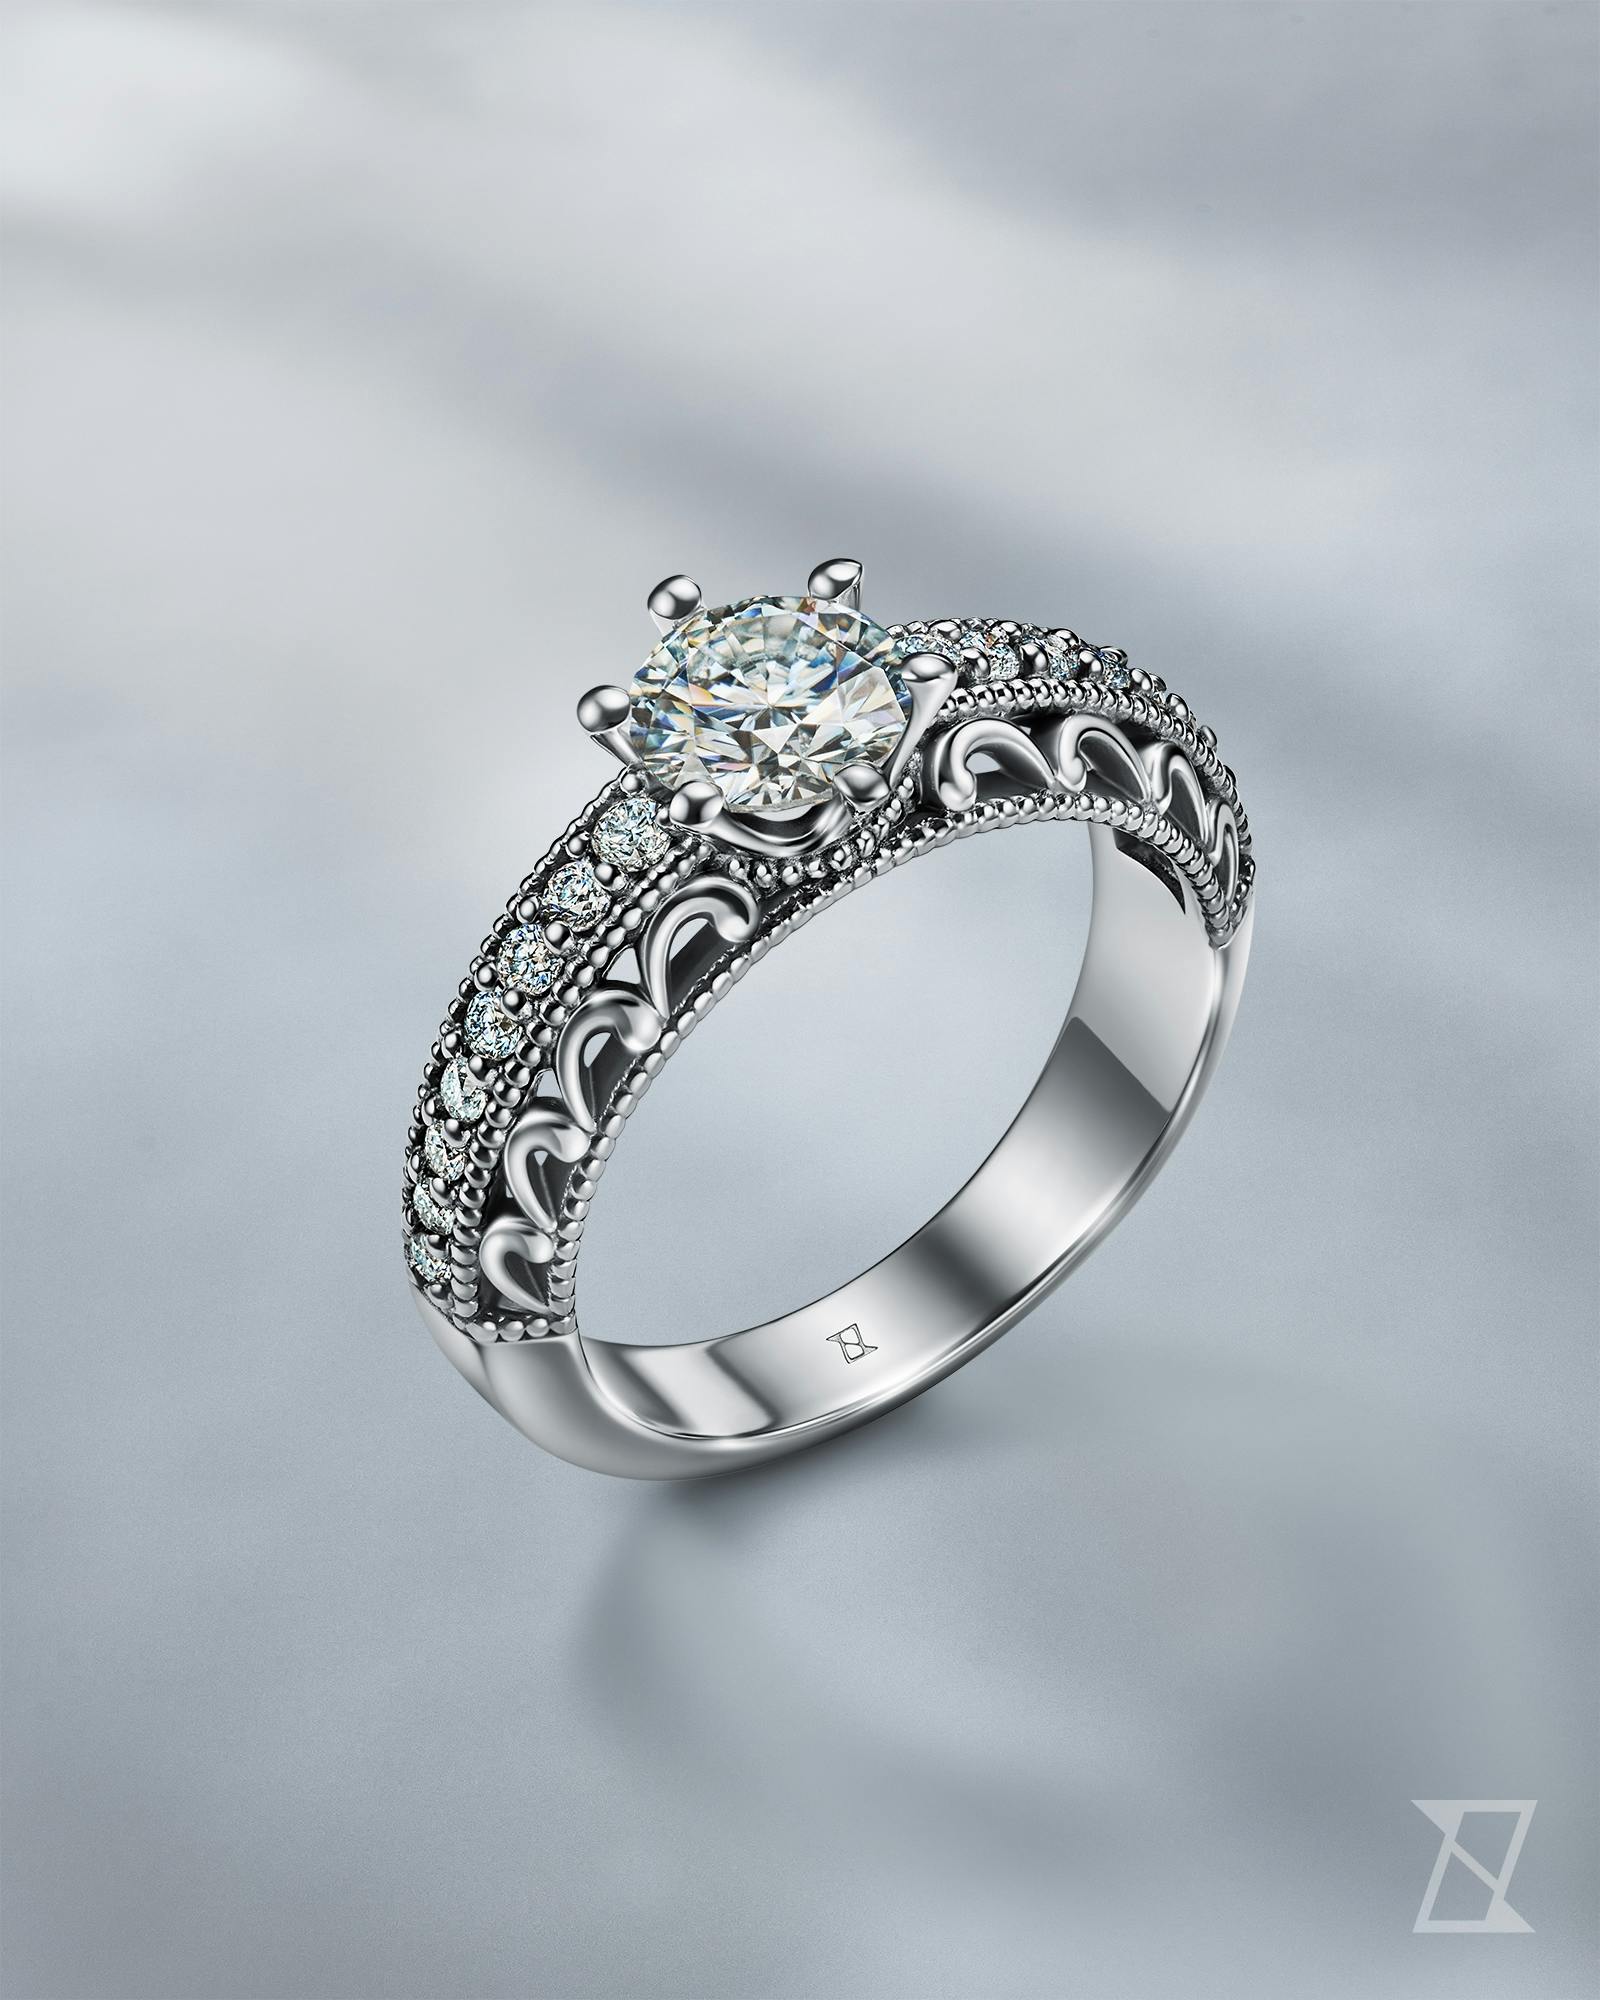 Luksusowy pierścionek zaręczynowy z diamentami w stylu edwardiańskim